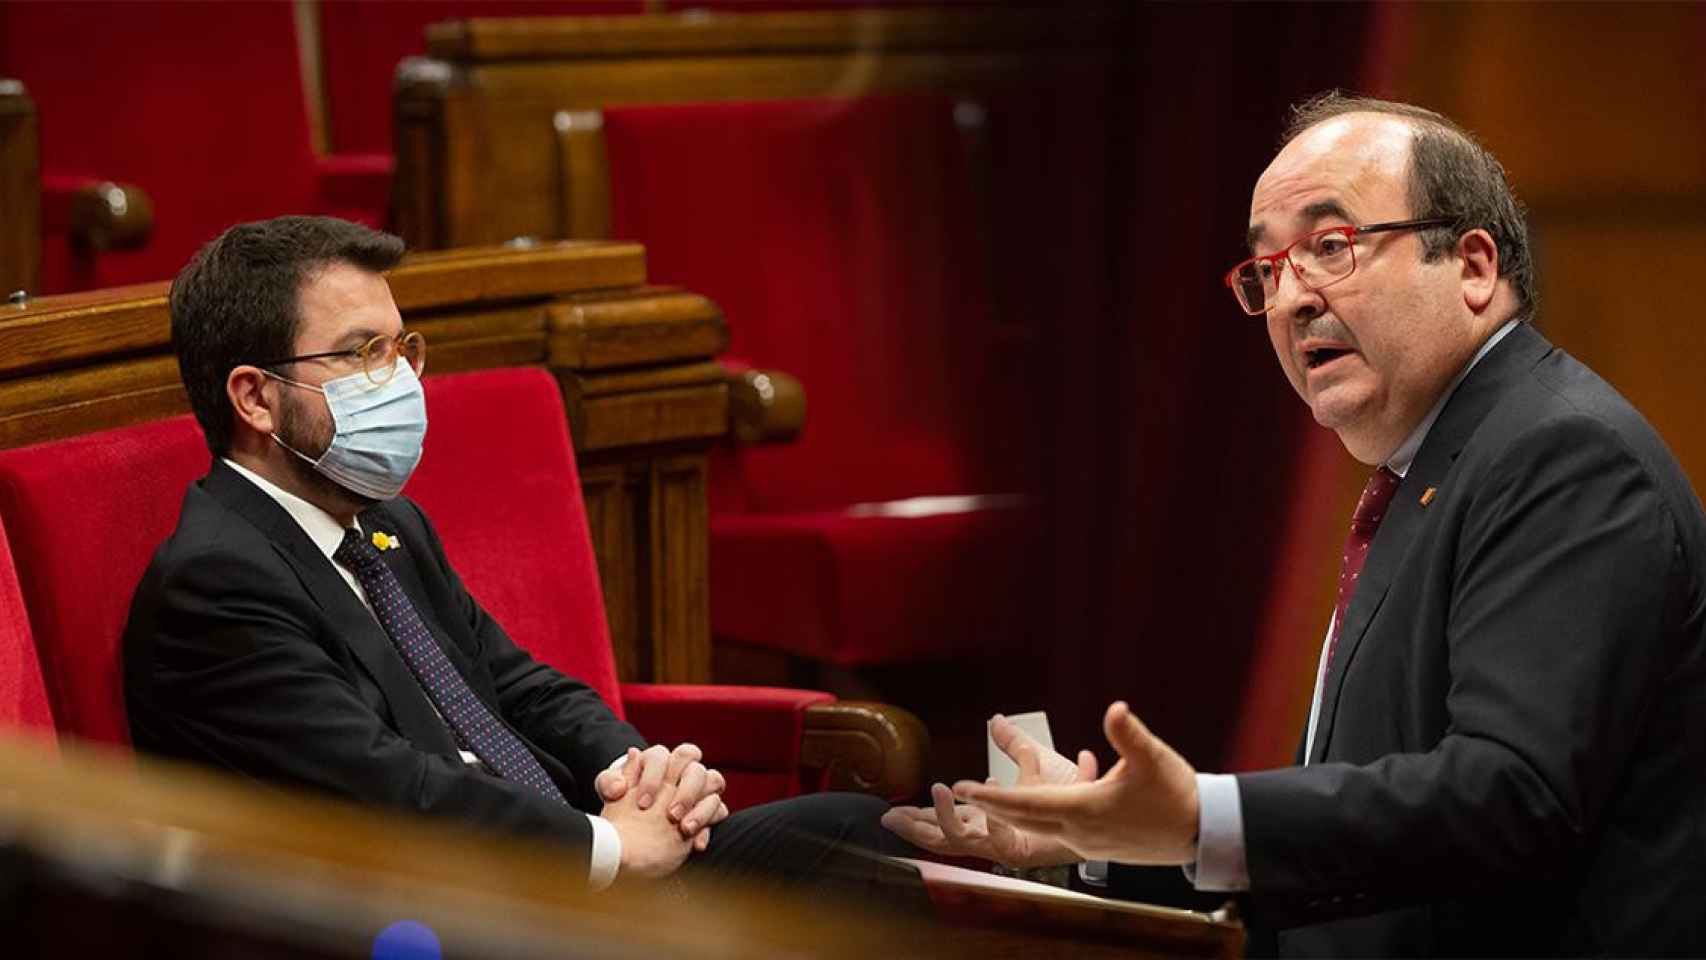 Pere Aragonès (ERC) e Iceta (PSC) en el Parlament / FOTOMONTAJE CG (VÍA EP)